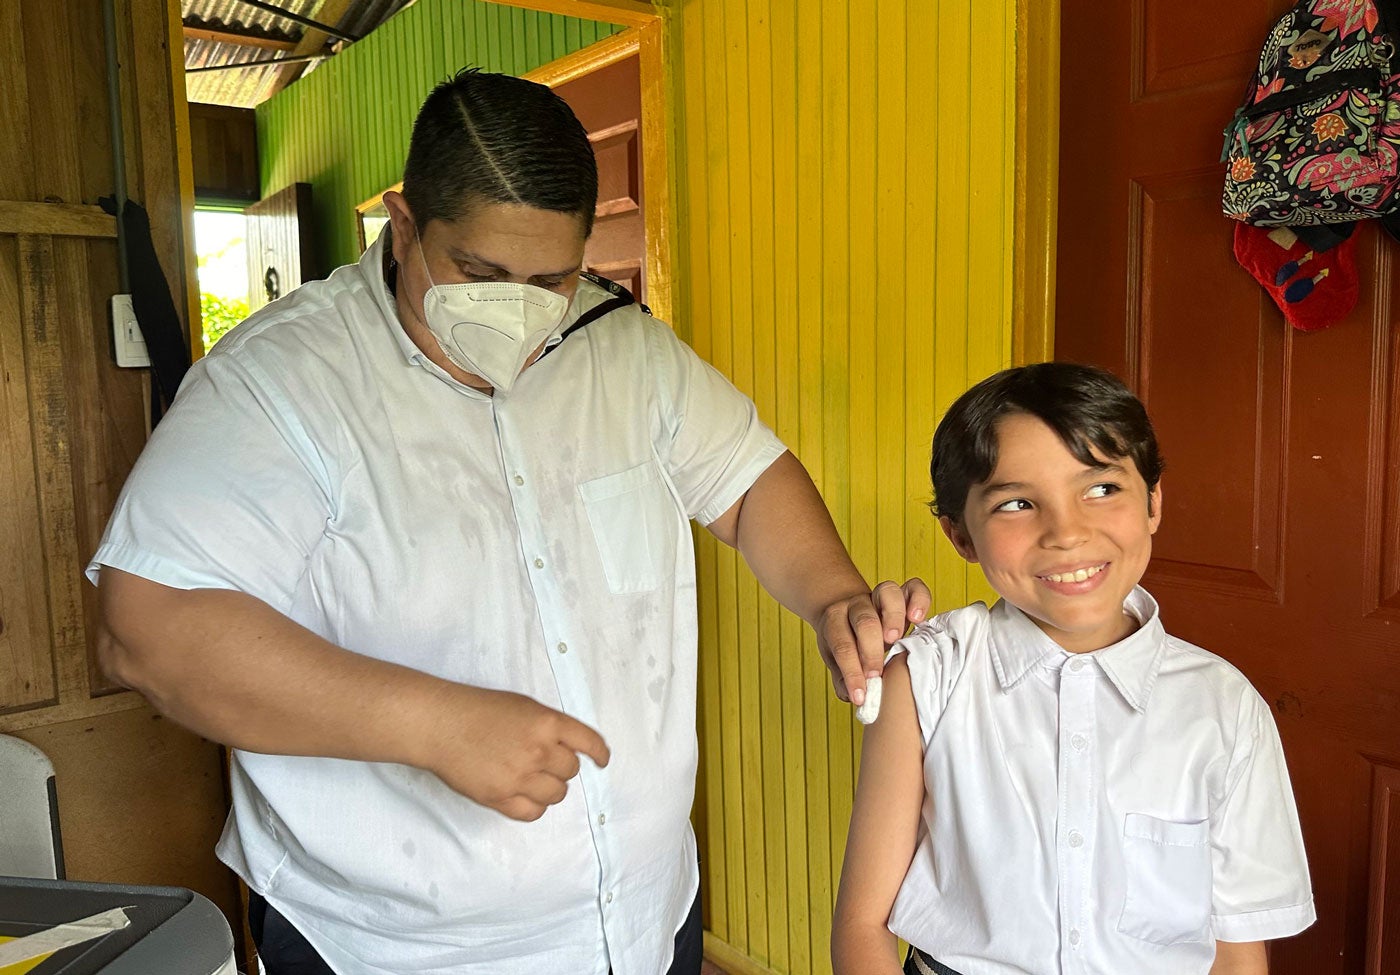 Jacinto Arroyo, asistente técnico de atención primaria (ATAP), administra la vacuna